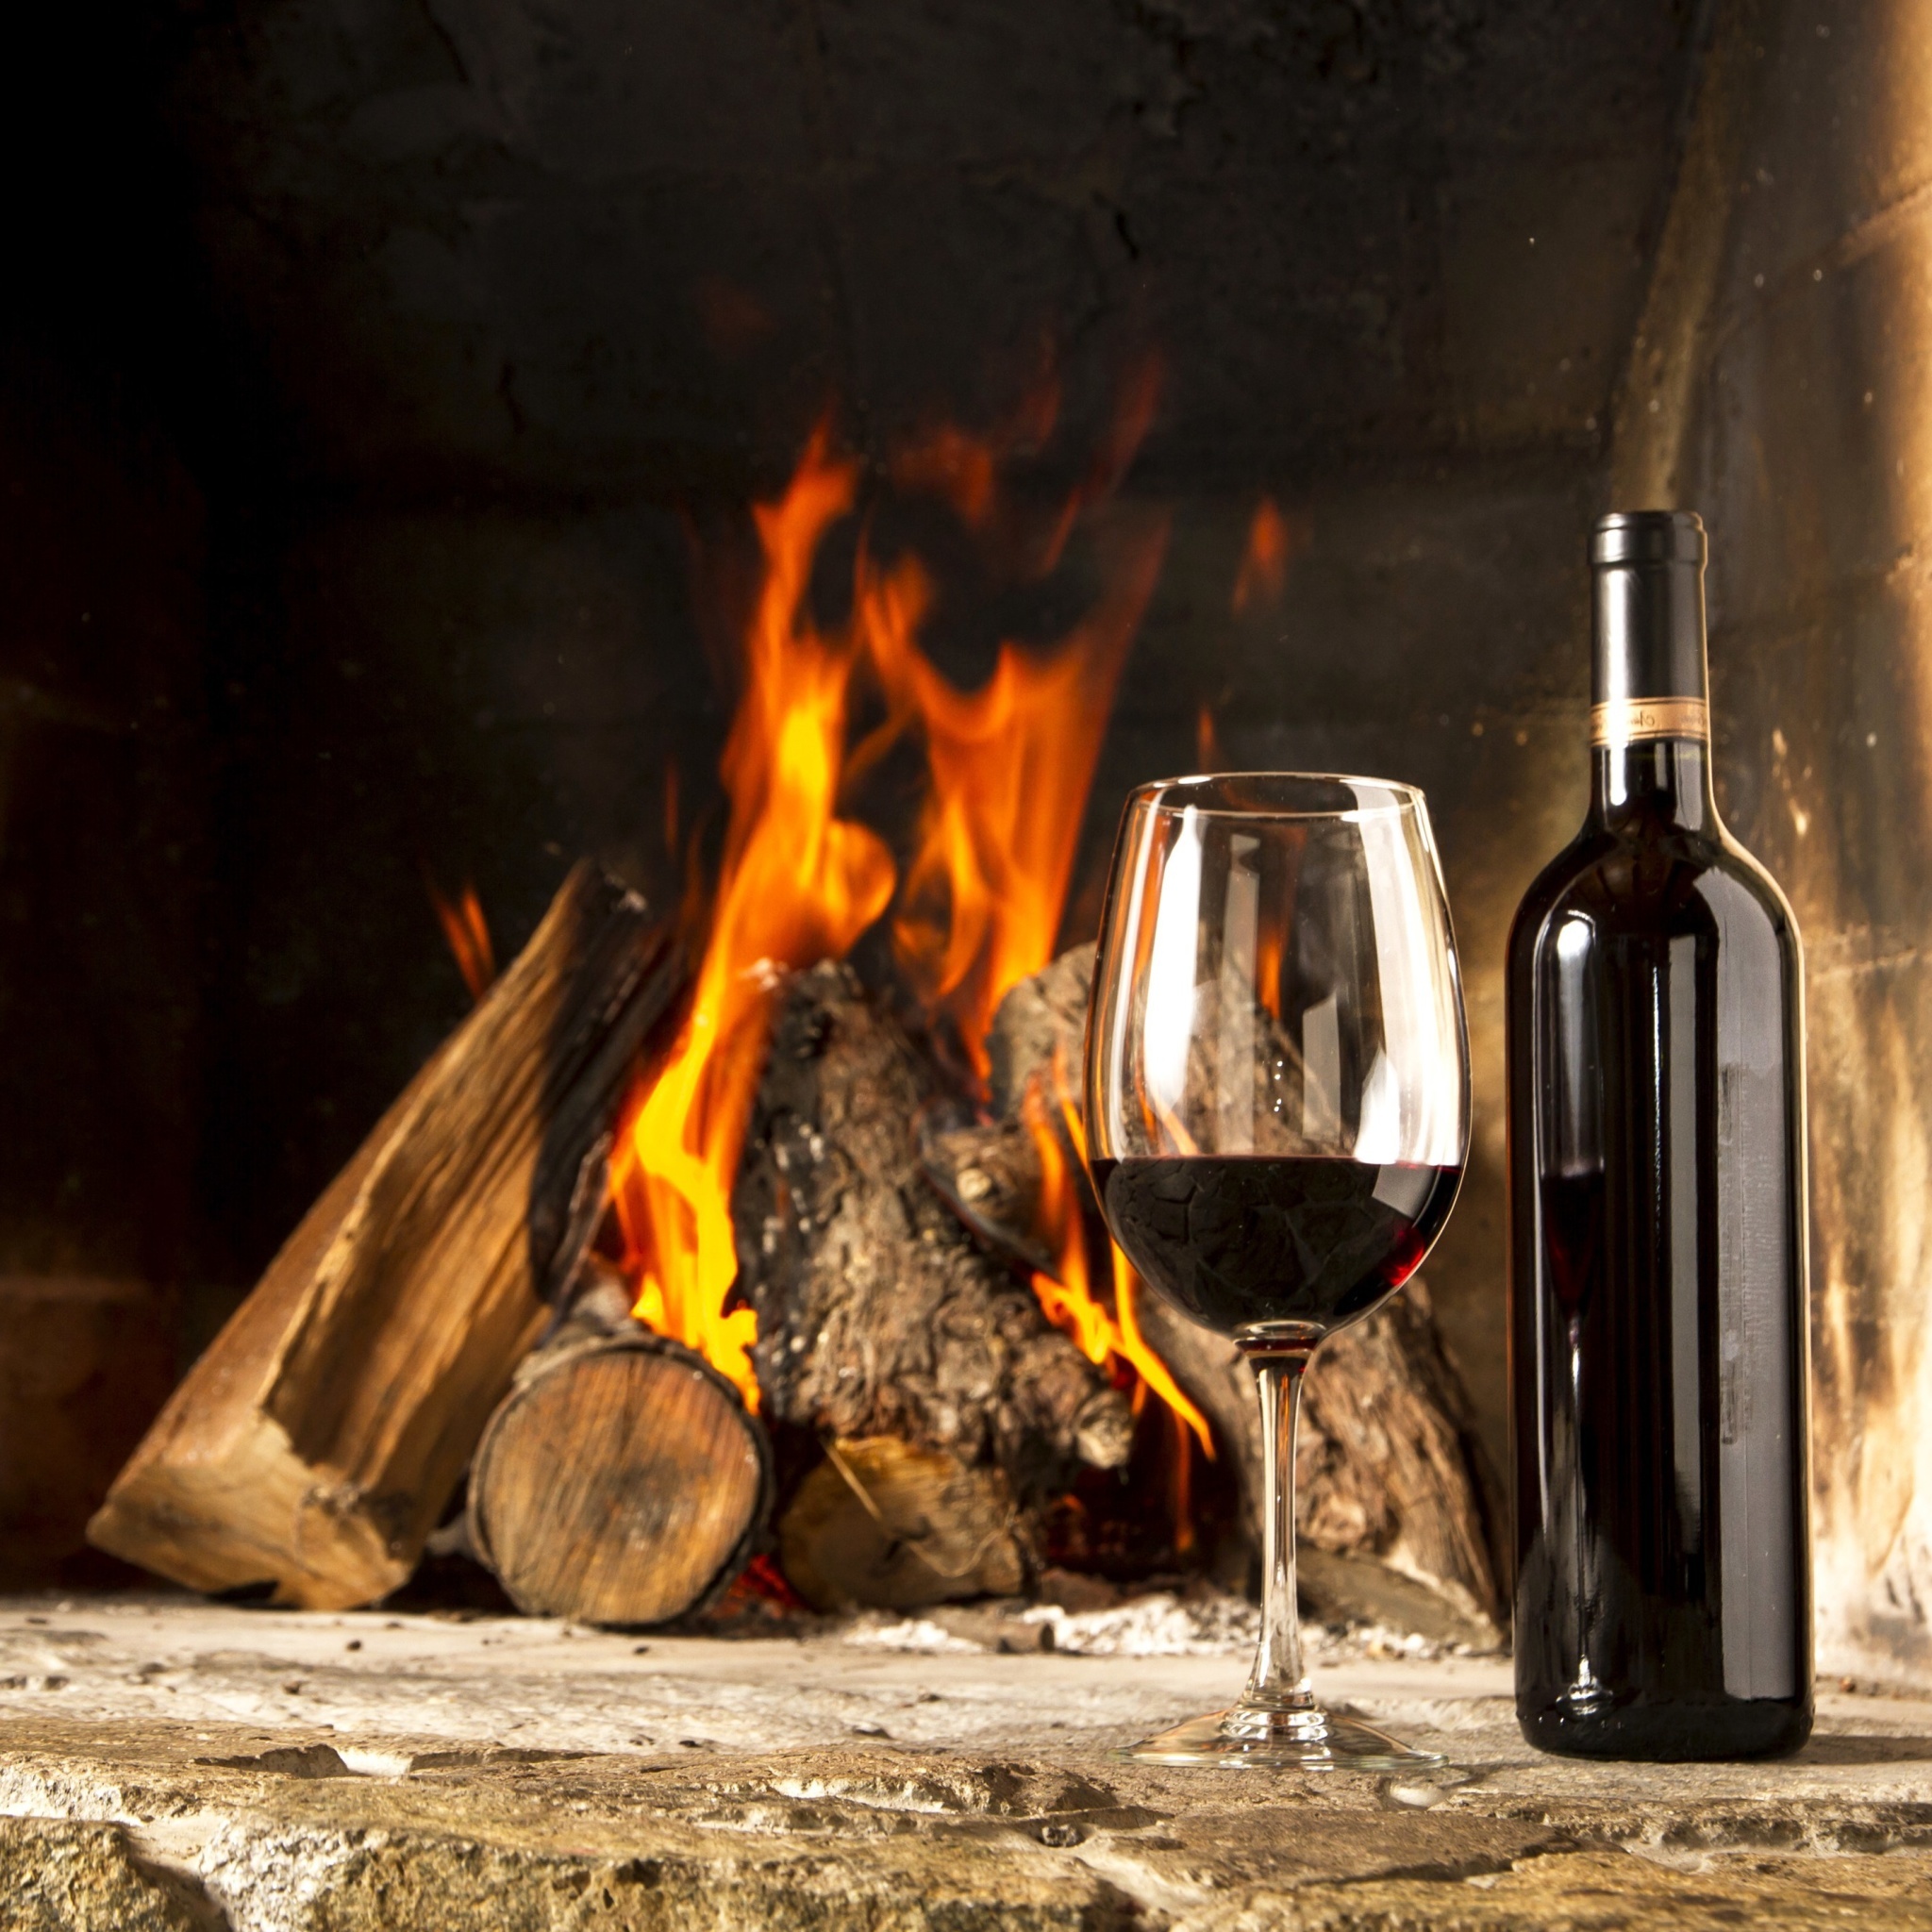 Обои Wine and fireplace 2048x2048